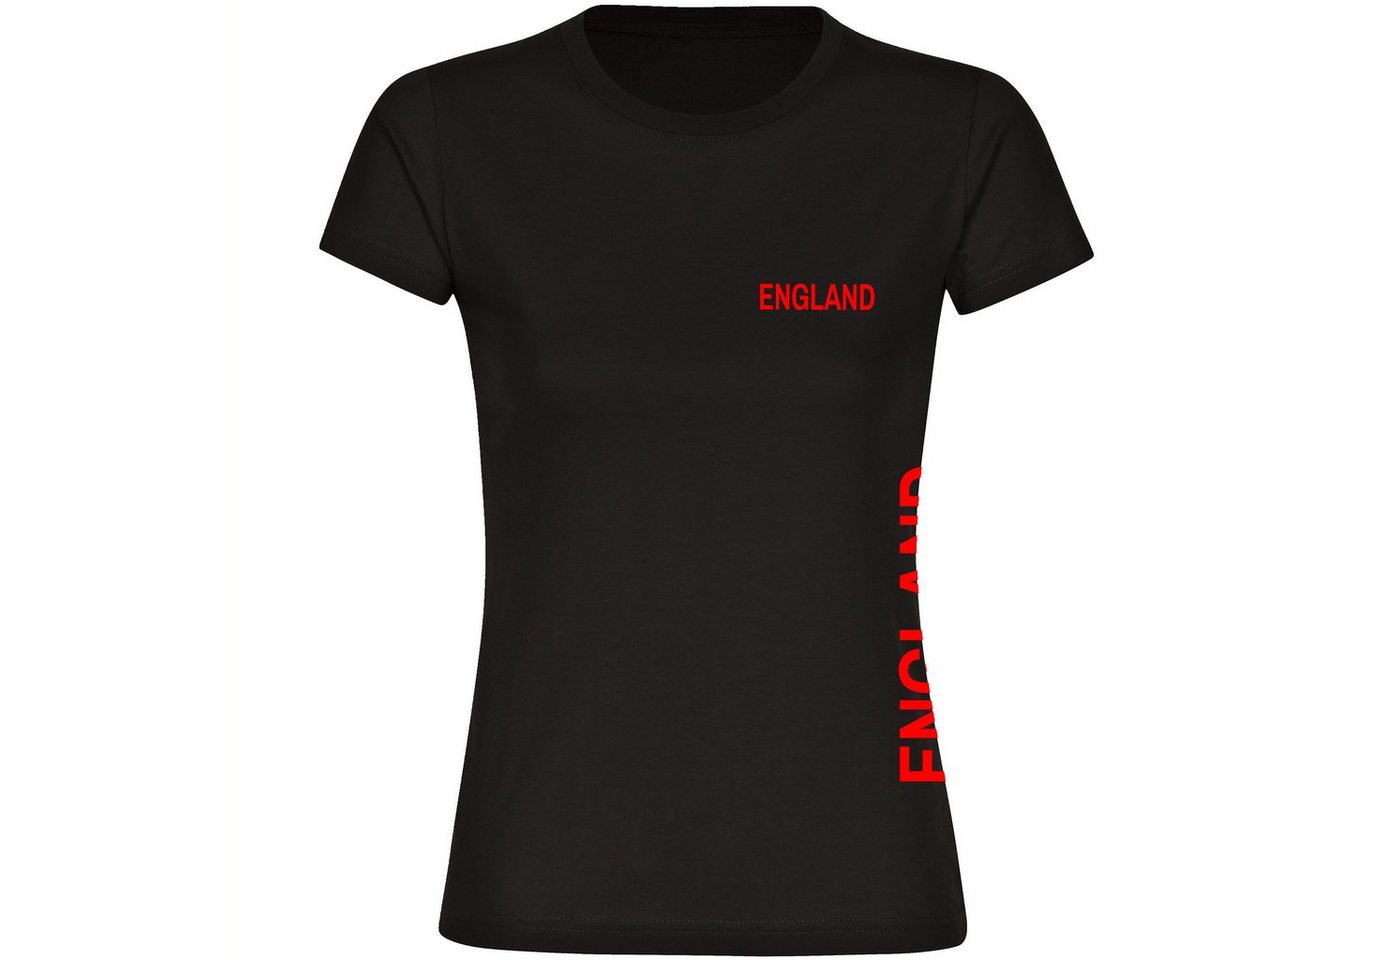 multifanshop T-Shirt Damen England - Brust & Seite - Frauen von multifanshop